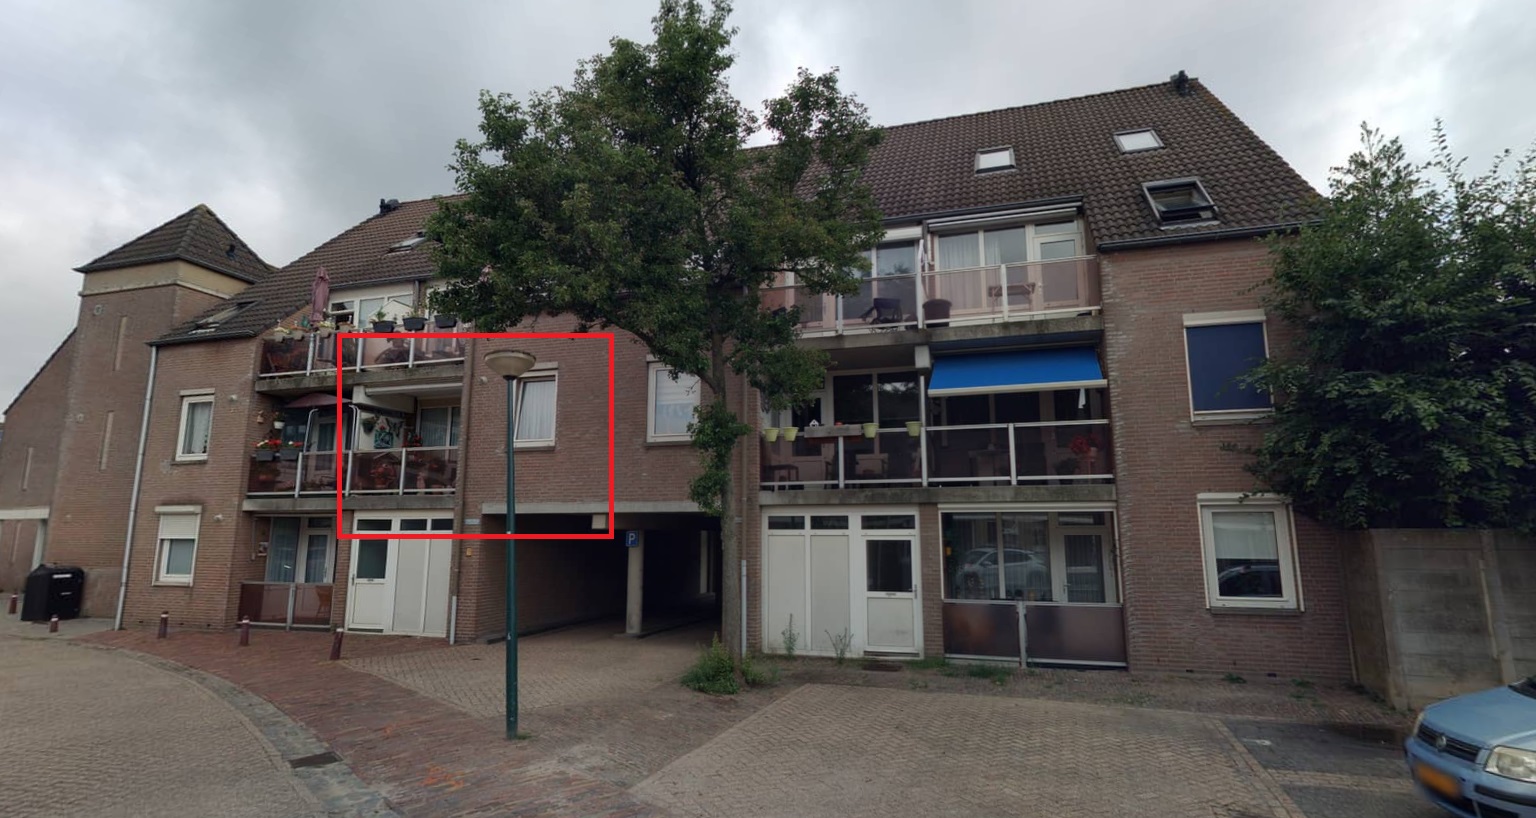 Poorthuys 113, 5171 CN Kaatsheuvel, Nederland